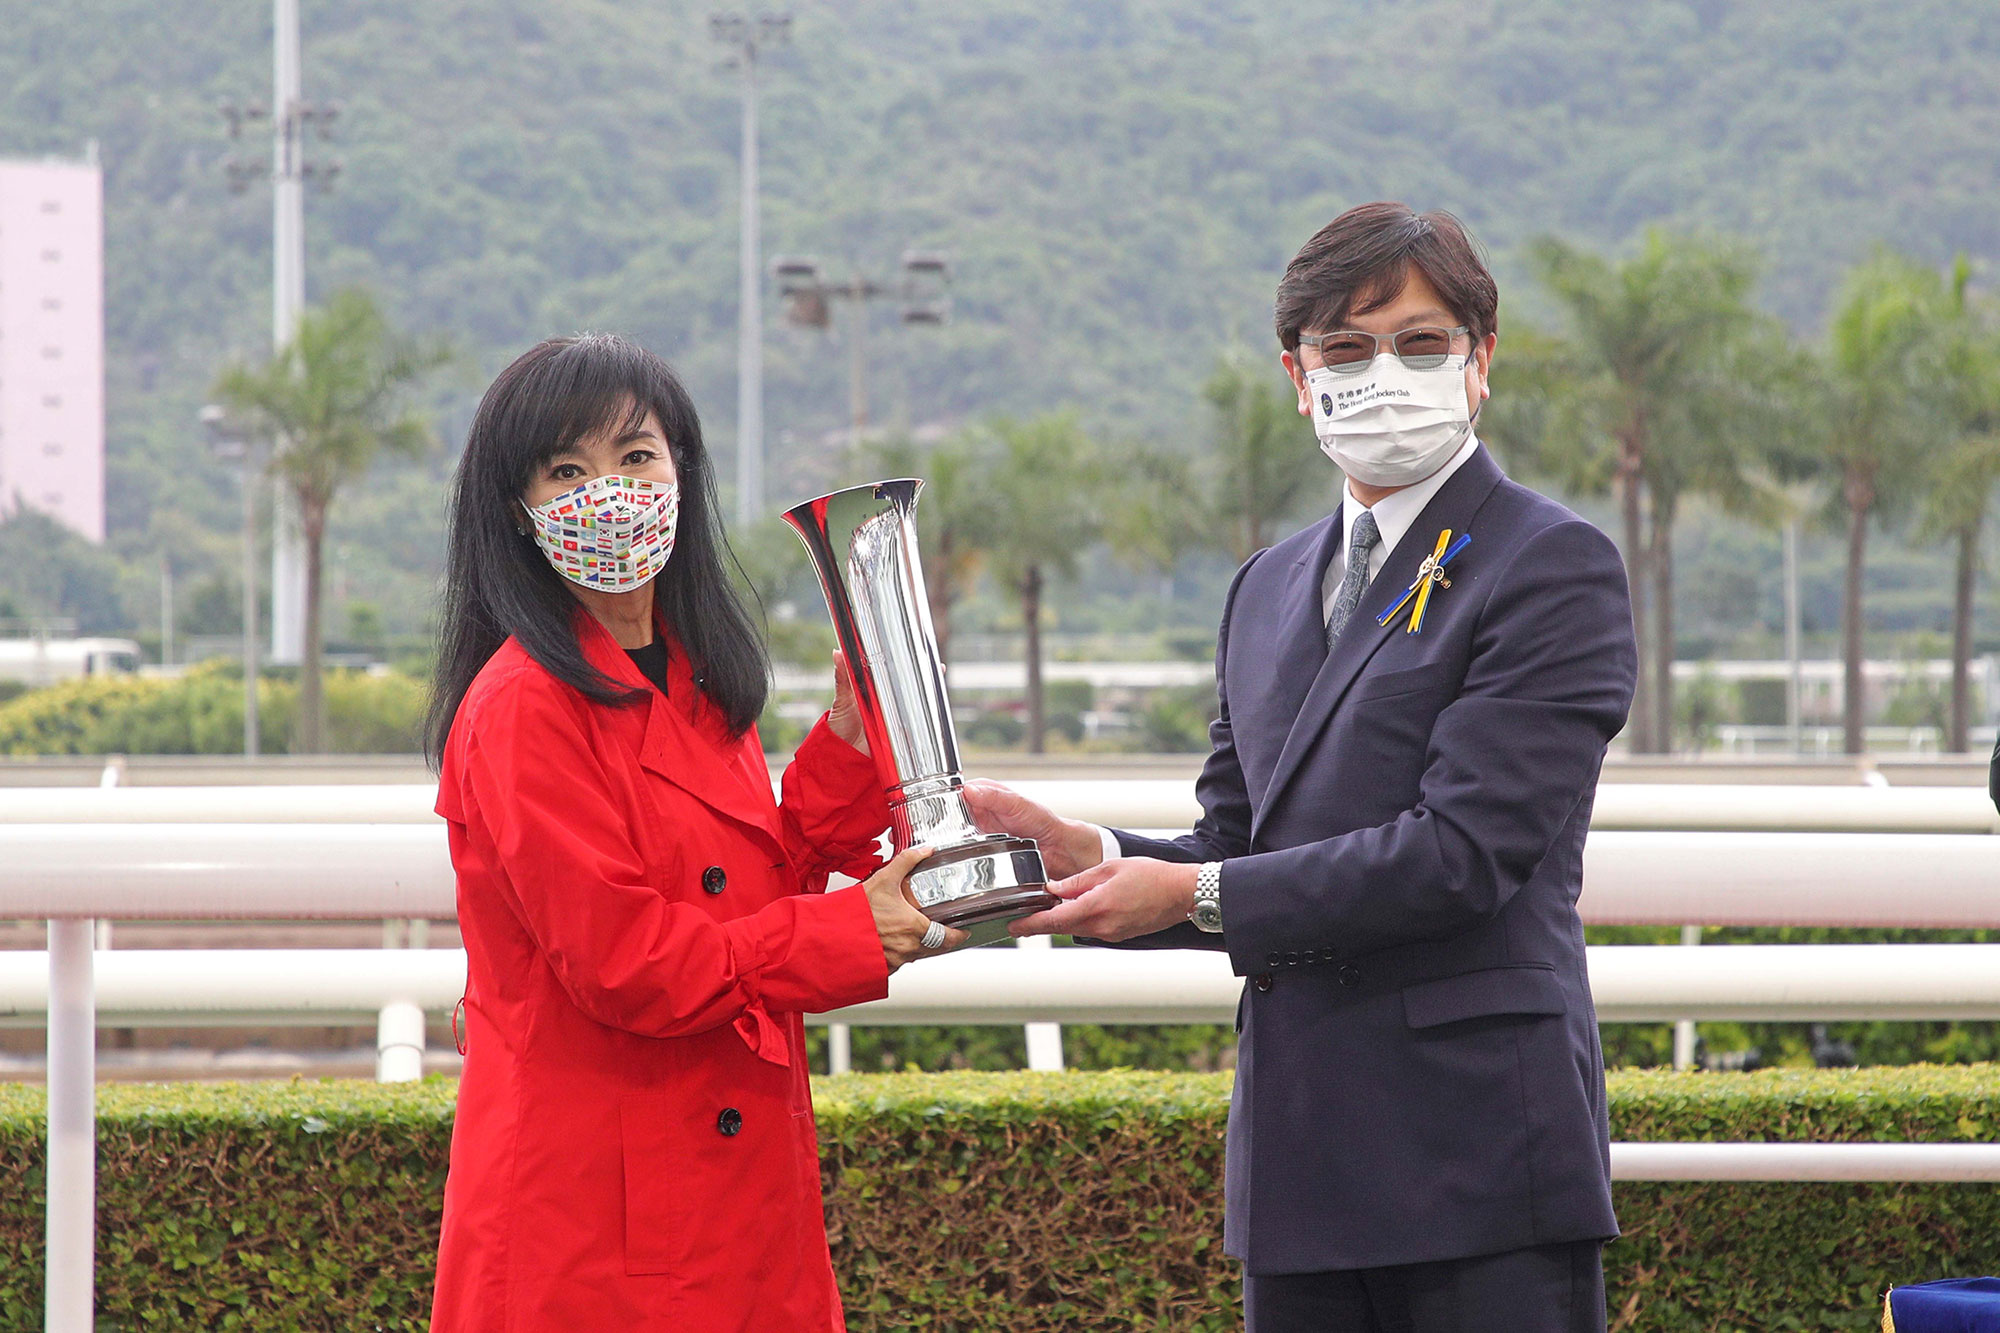 馬會董事陳衍里醫生將沙田銀瓶獎盃及紀念銀碟頒予「蟲草成名」的馬主嚴惠玲、練馬師高伯新及騎師巴度。